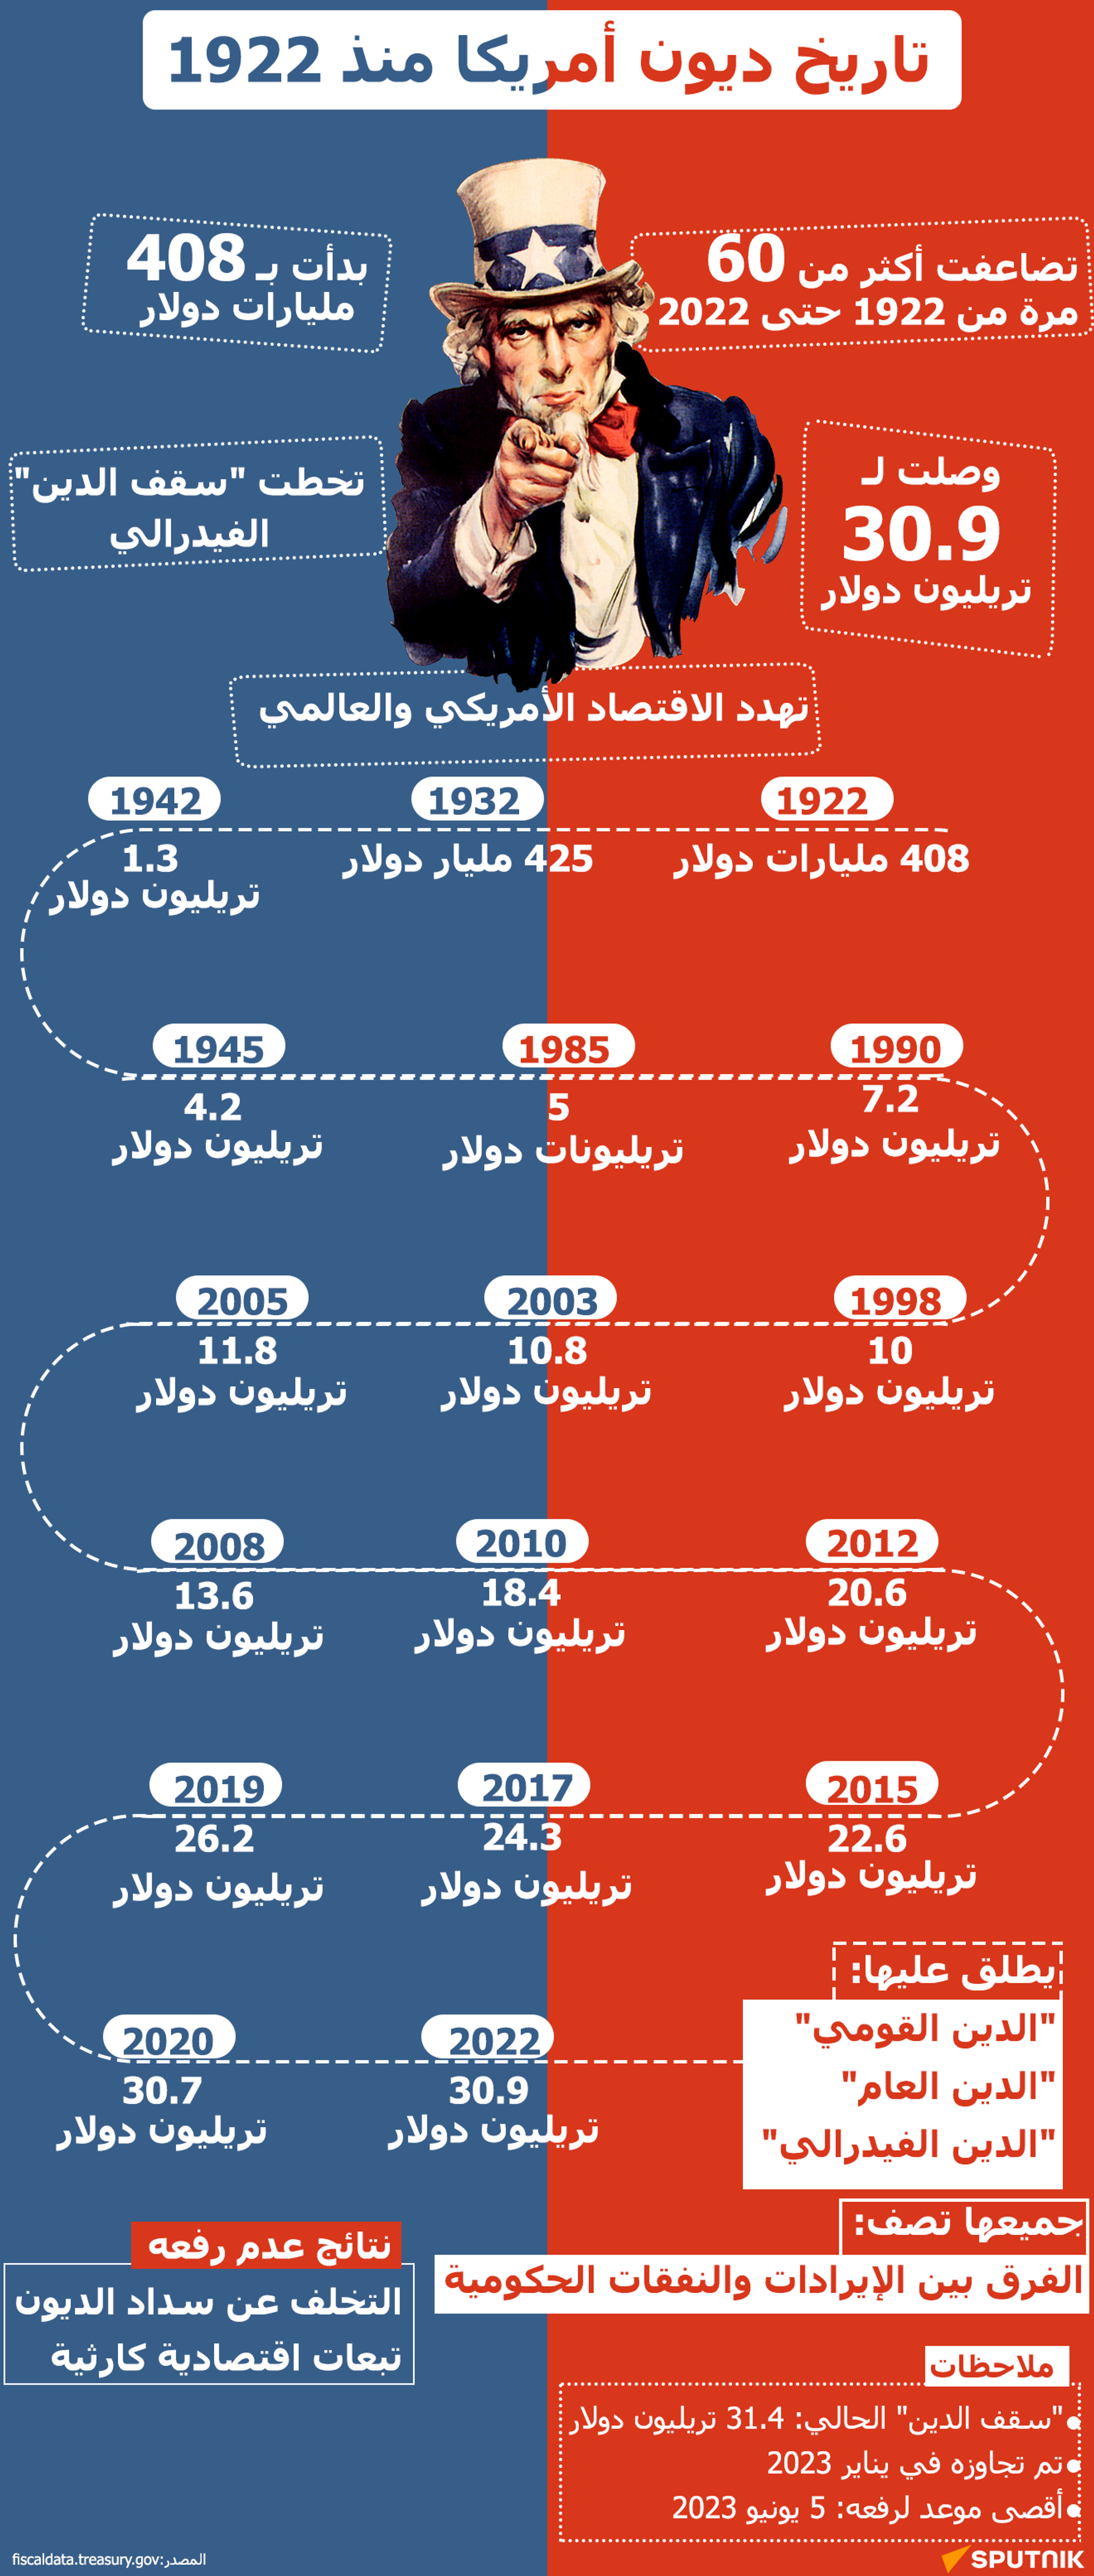 تاريخ ديون أمريكا منذ 1922 - سبوتنيك عربي, 1920, 05.06.2023